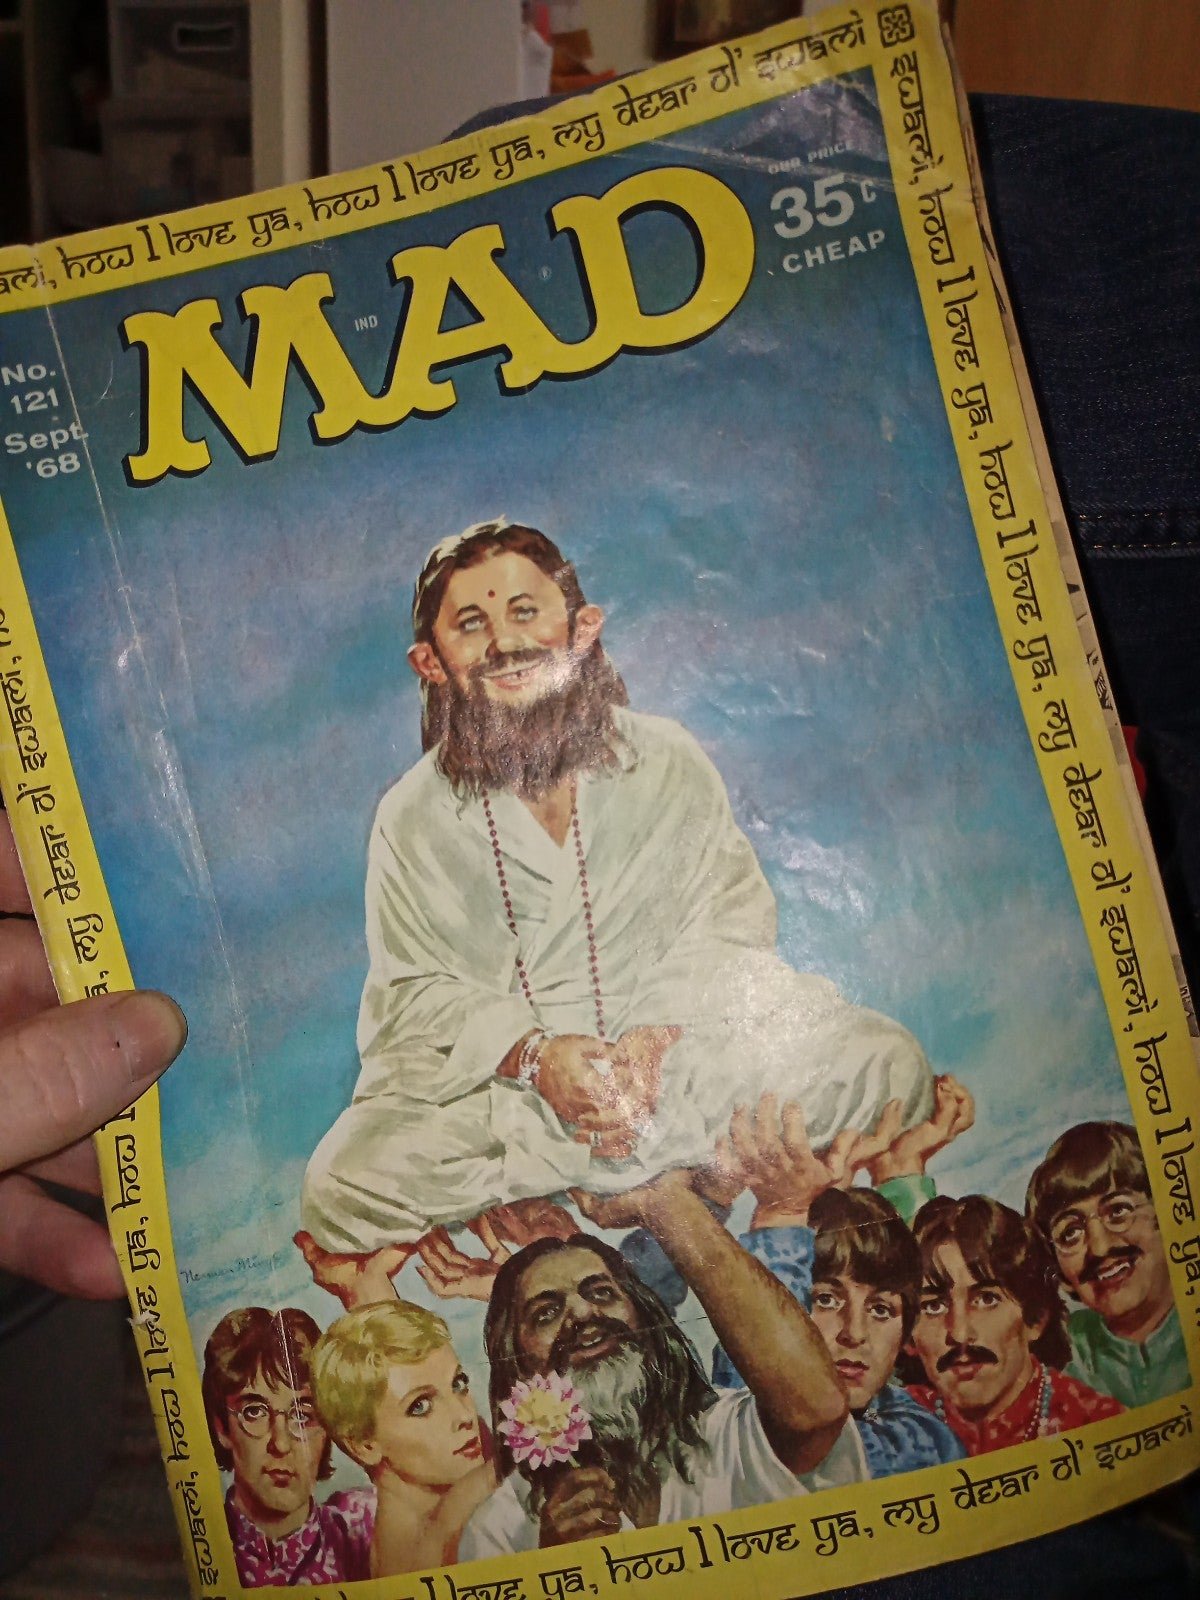 Mad magazine Sept 1968 no. 121 2ny5pcpAc